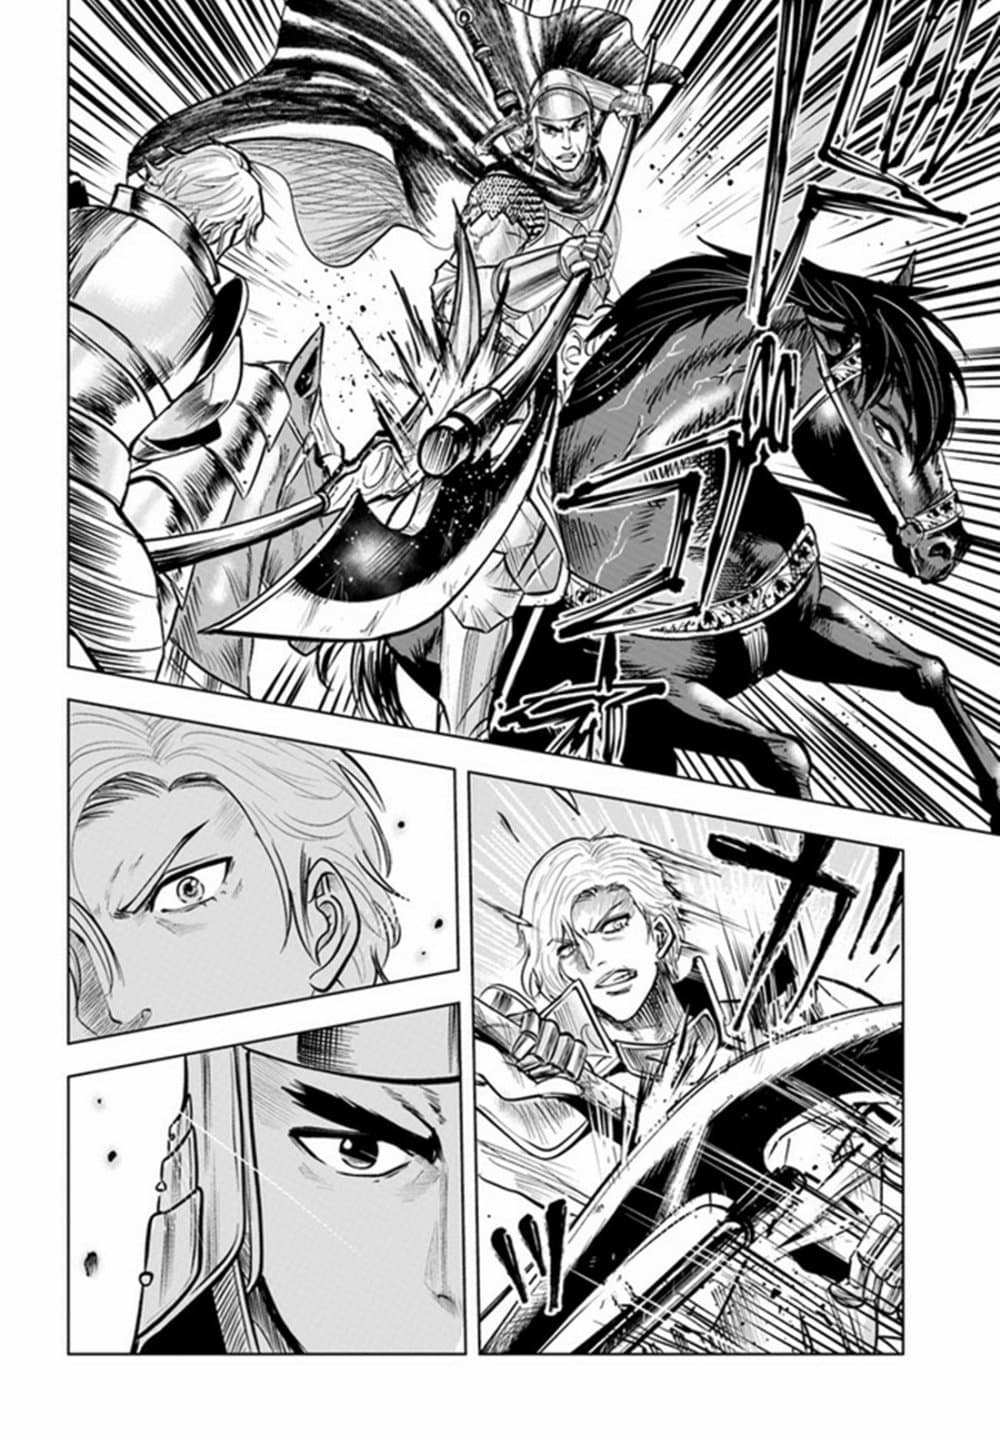 Oukoku e Tsuzuku Michi dorei Kenshi no Nariagari Eiyutan (Haaremu Raifu) - Road to the Kingdom Slave Swordsman the Rise of Heroes - Harem Life 36-36